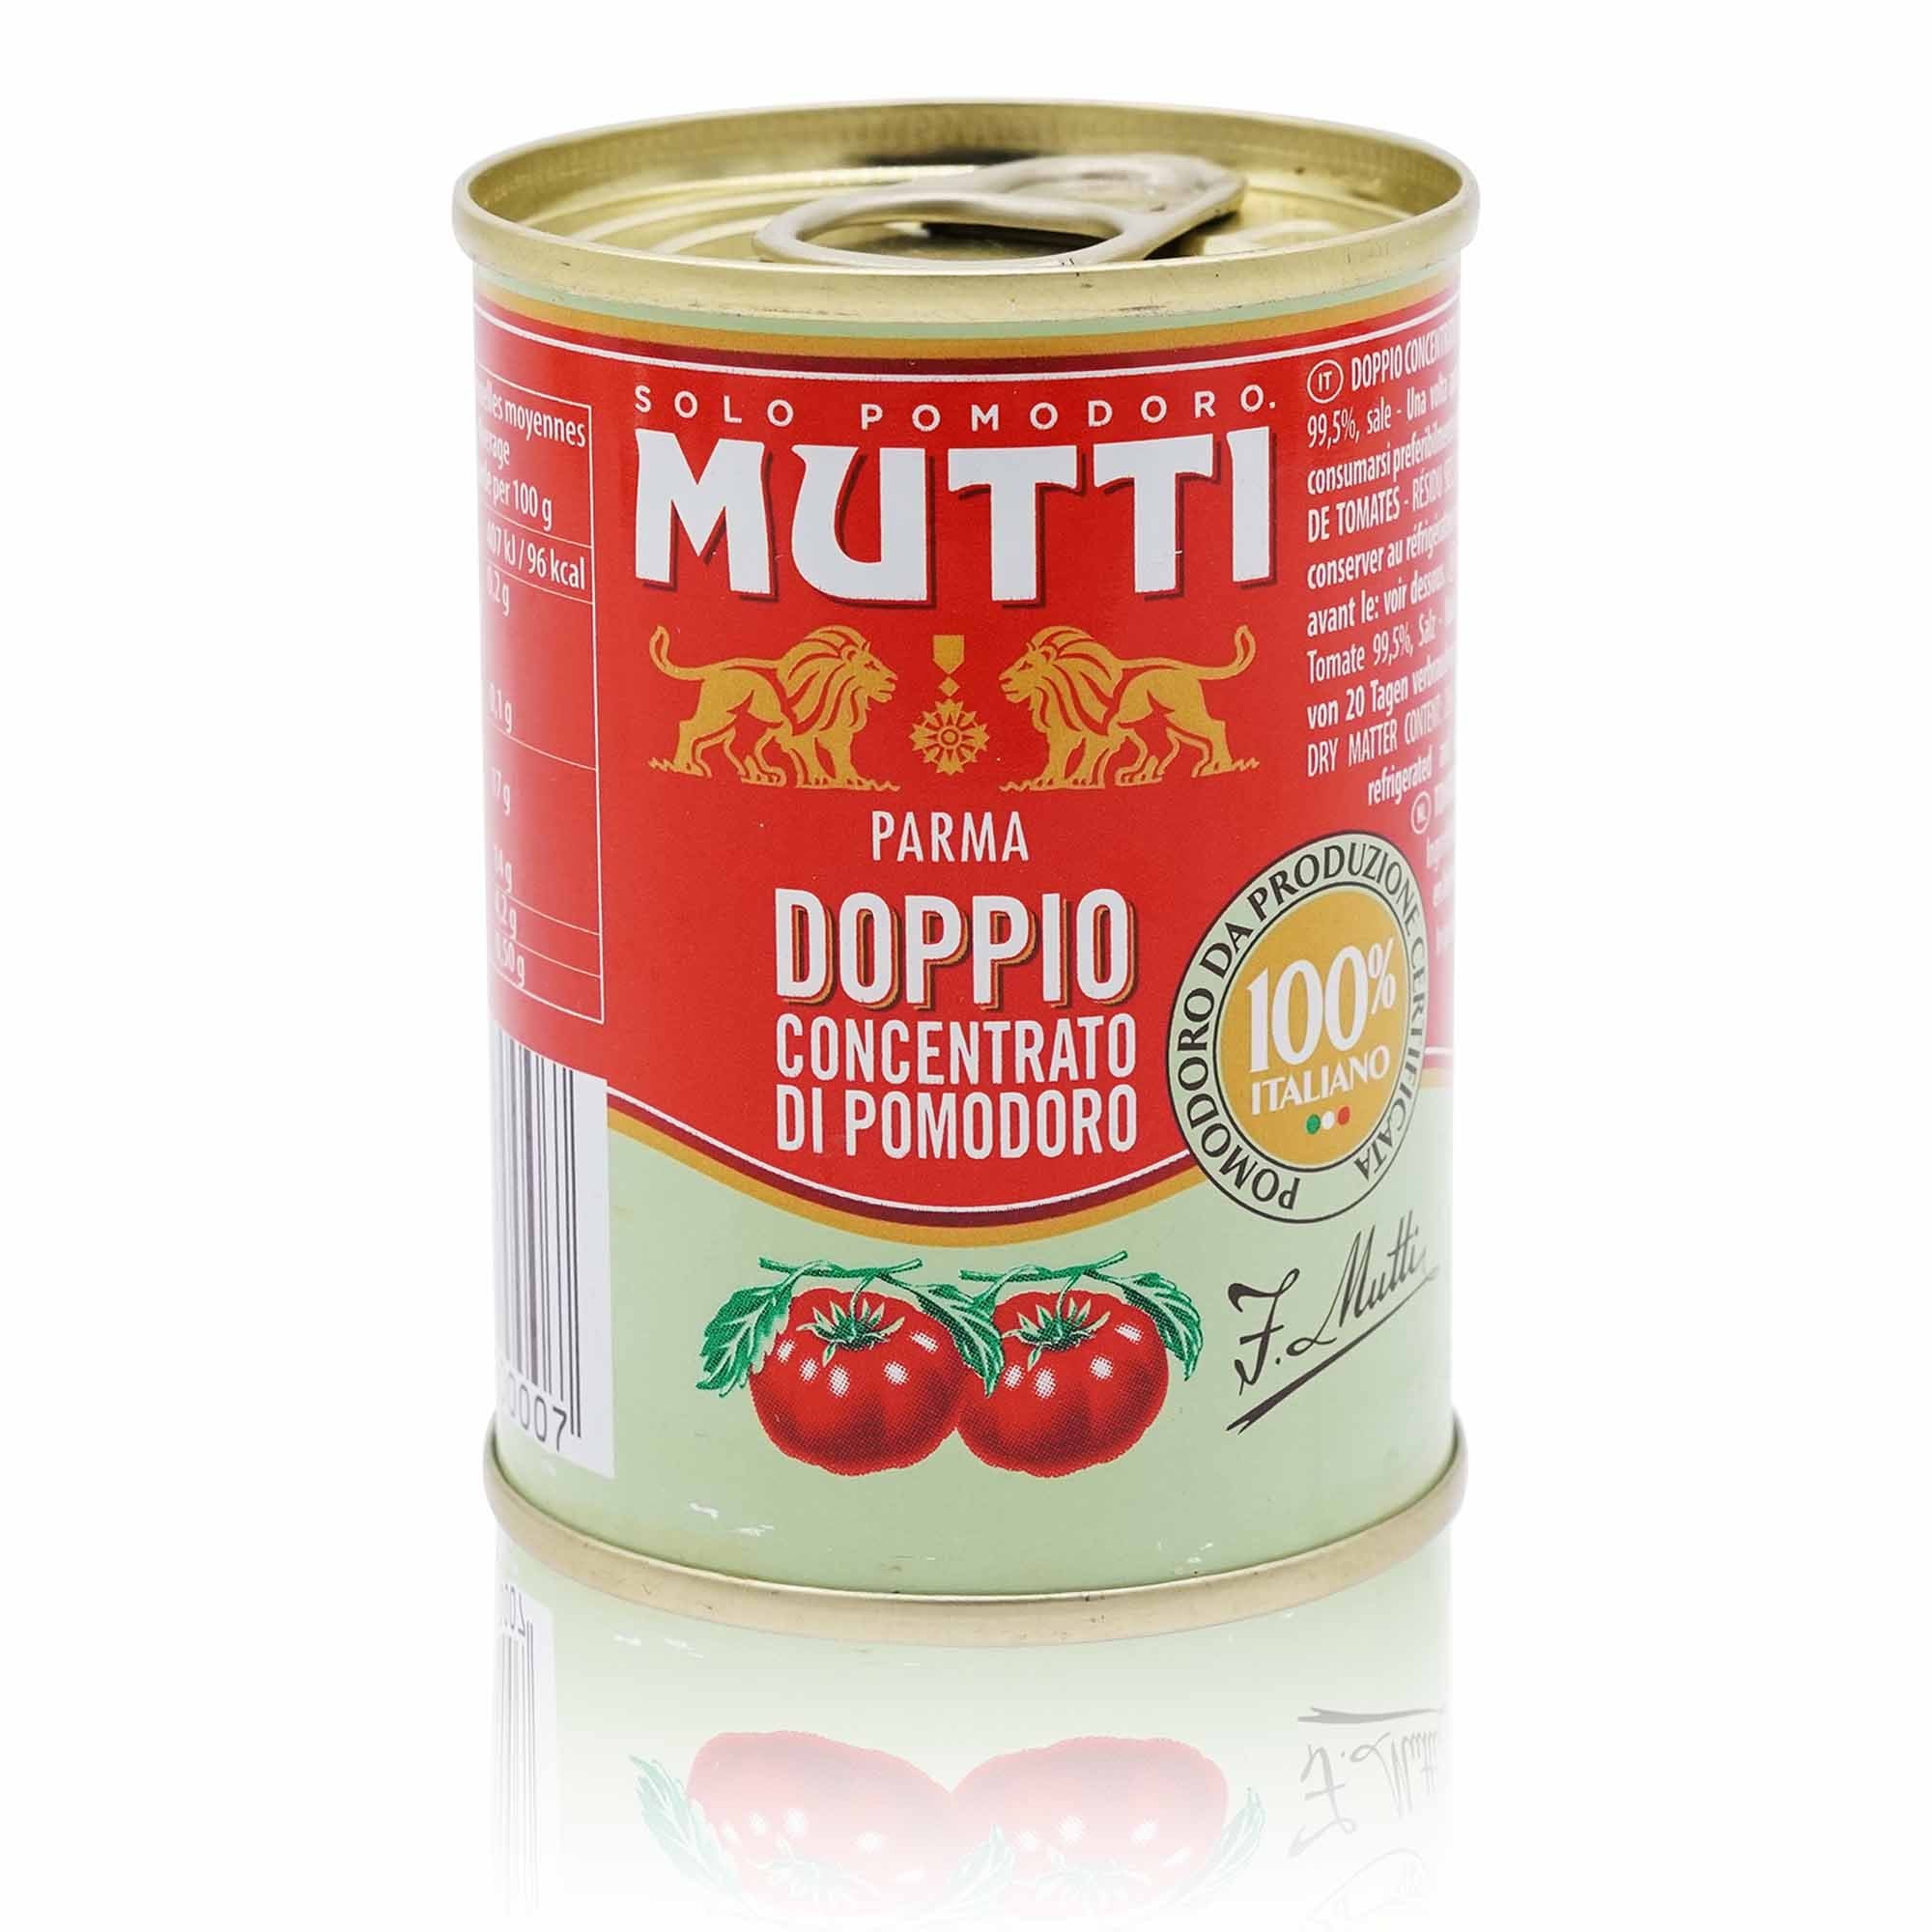 MUTTI Doppio Concentrato di pomodoro – Tomatenmark doppelt konzentriert - 0,140kg